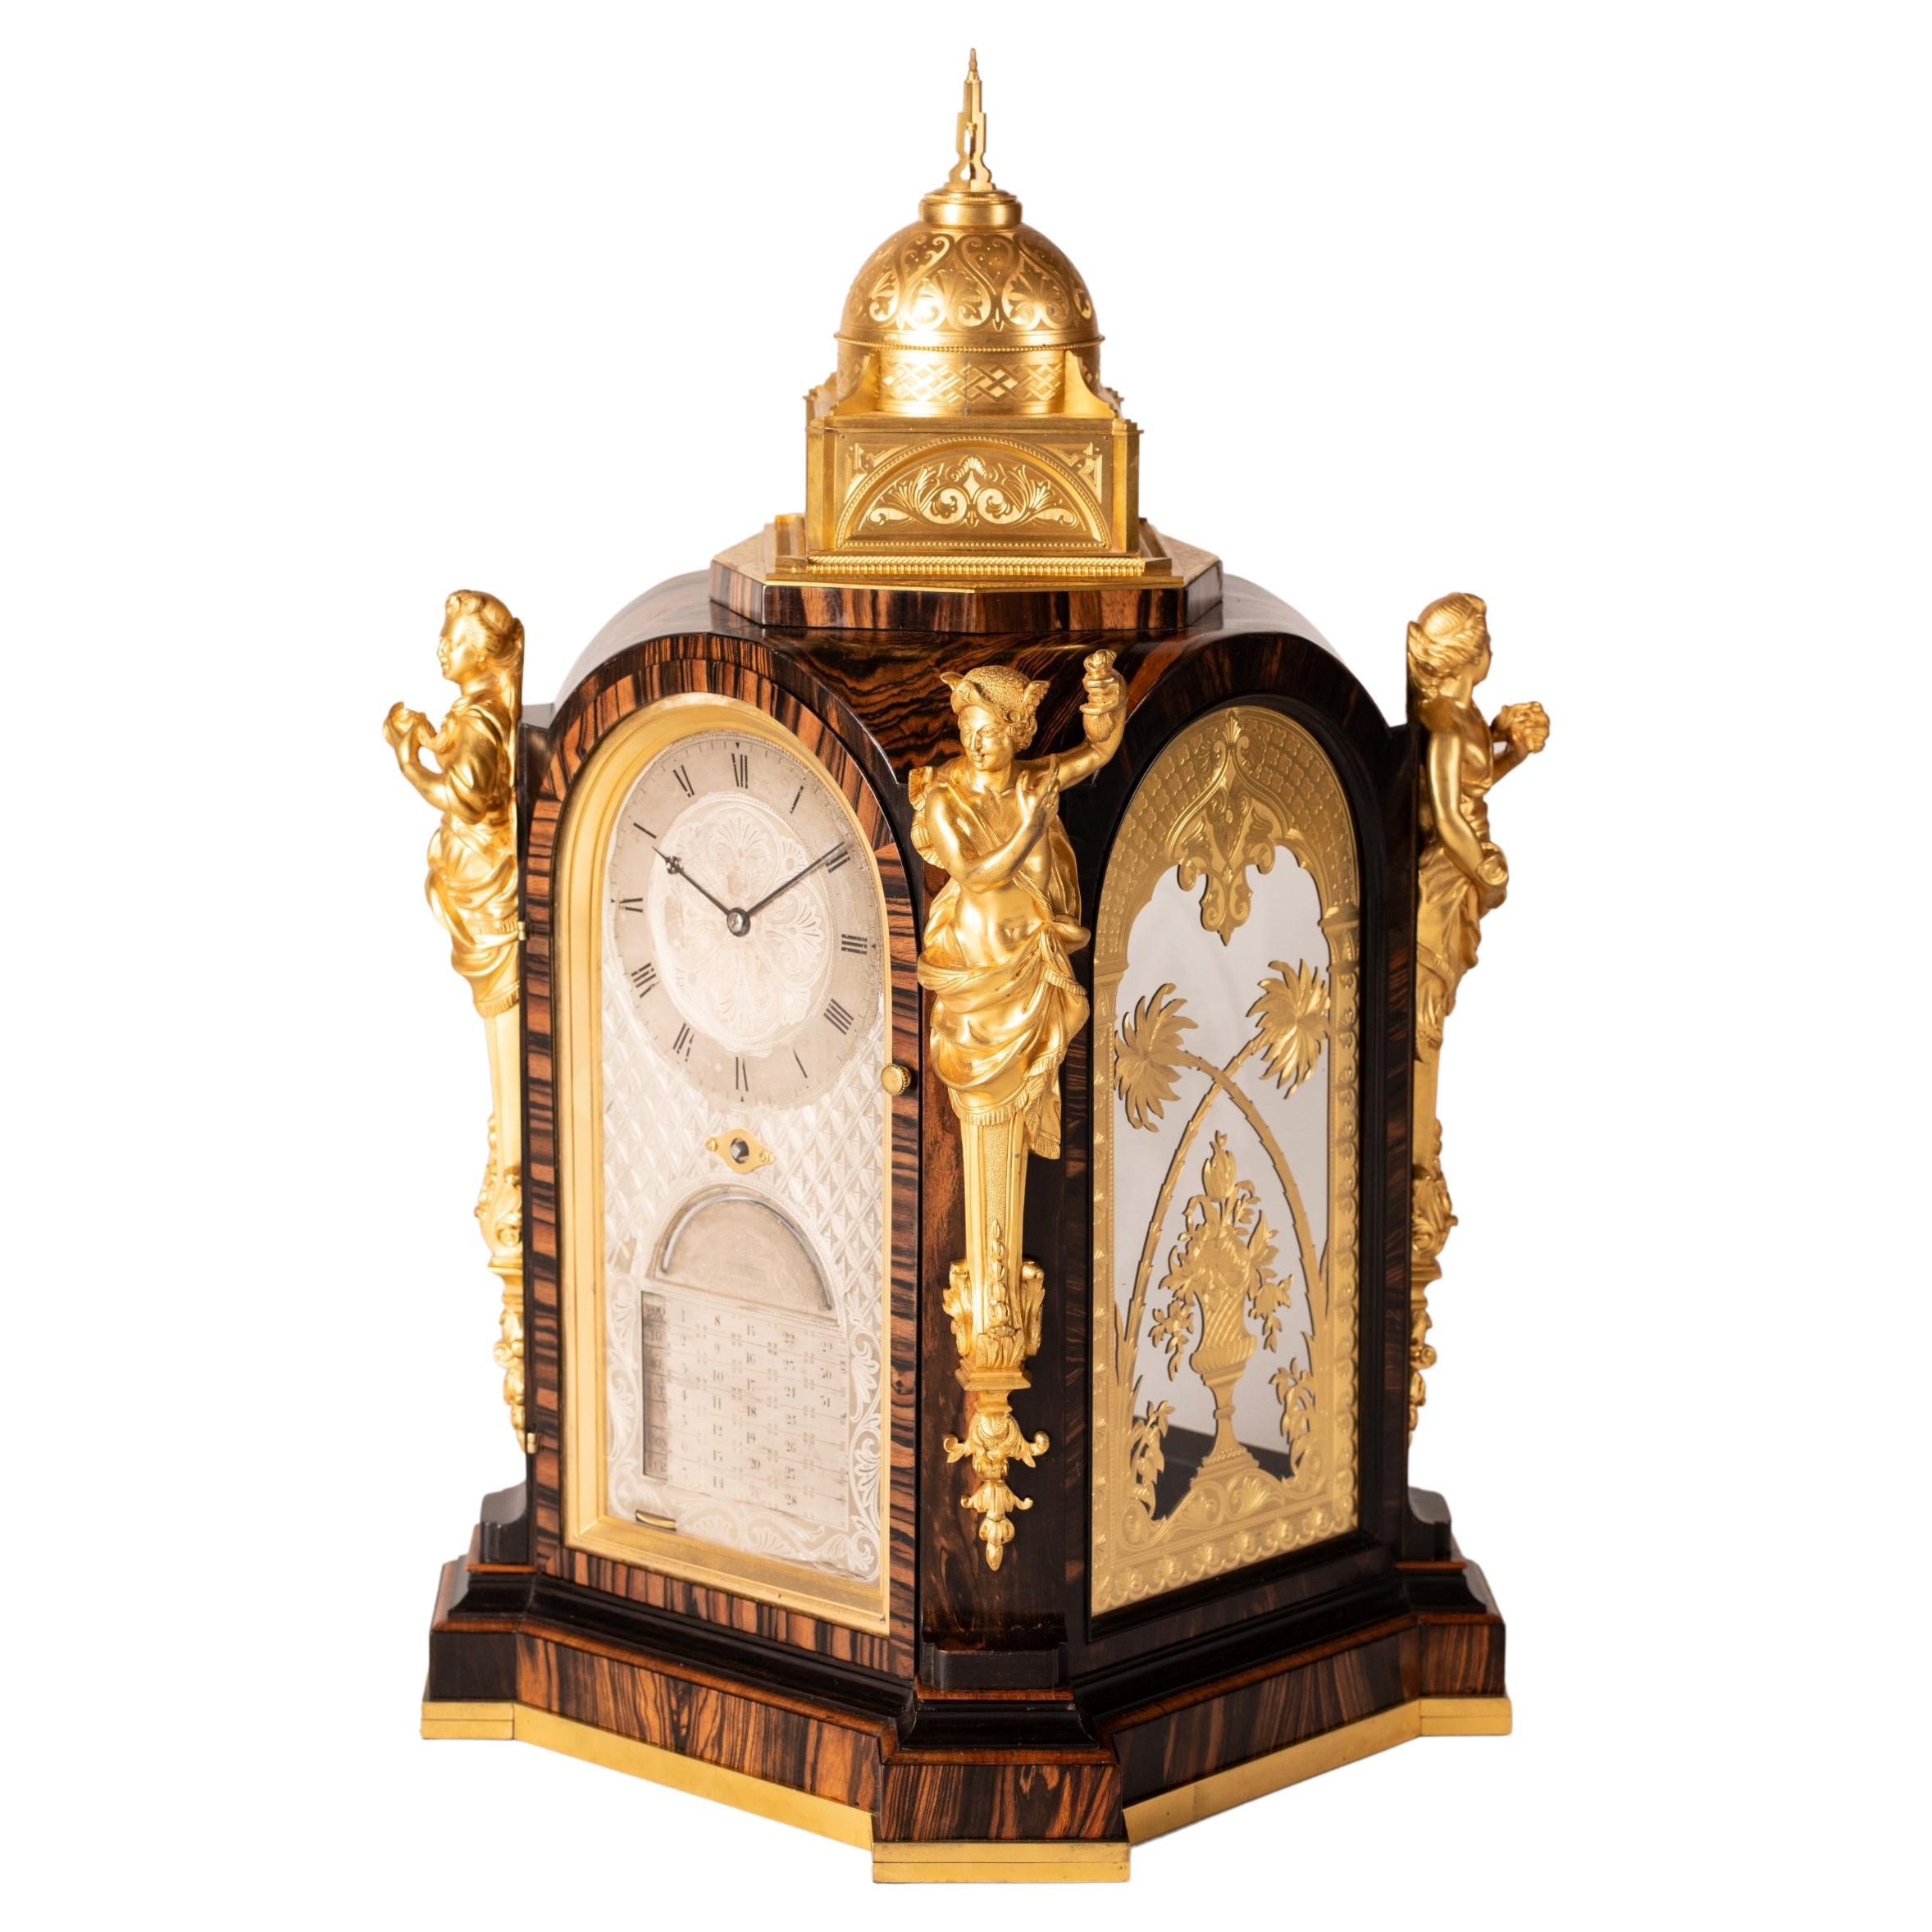 Coromandelfarbene, furnierte, jahrhundertealte Uhr von Thomas Cole, 19. Jahrhundert, sehr selten